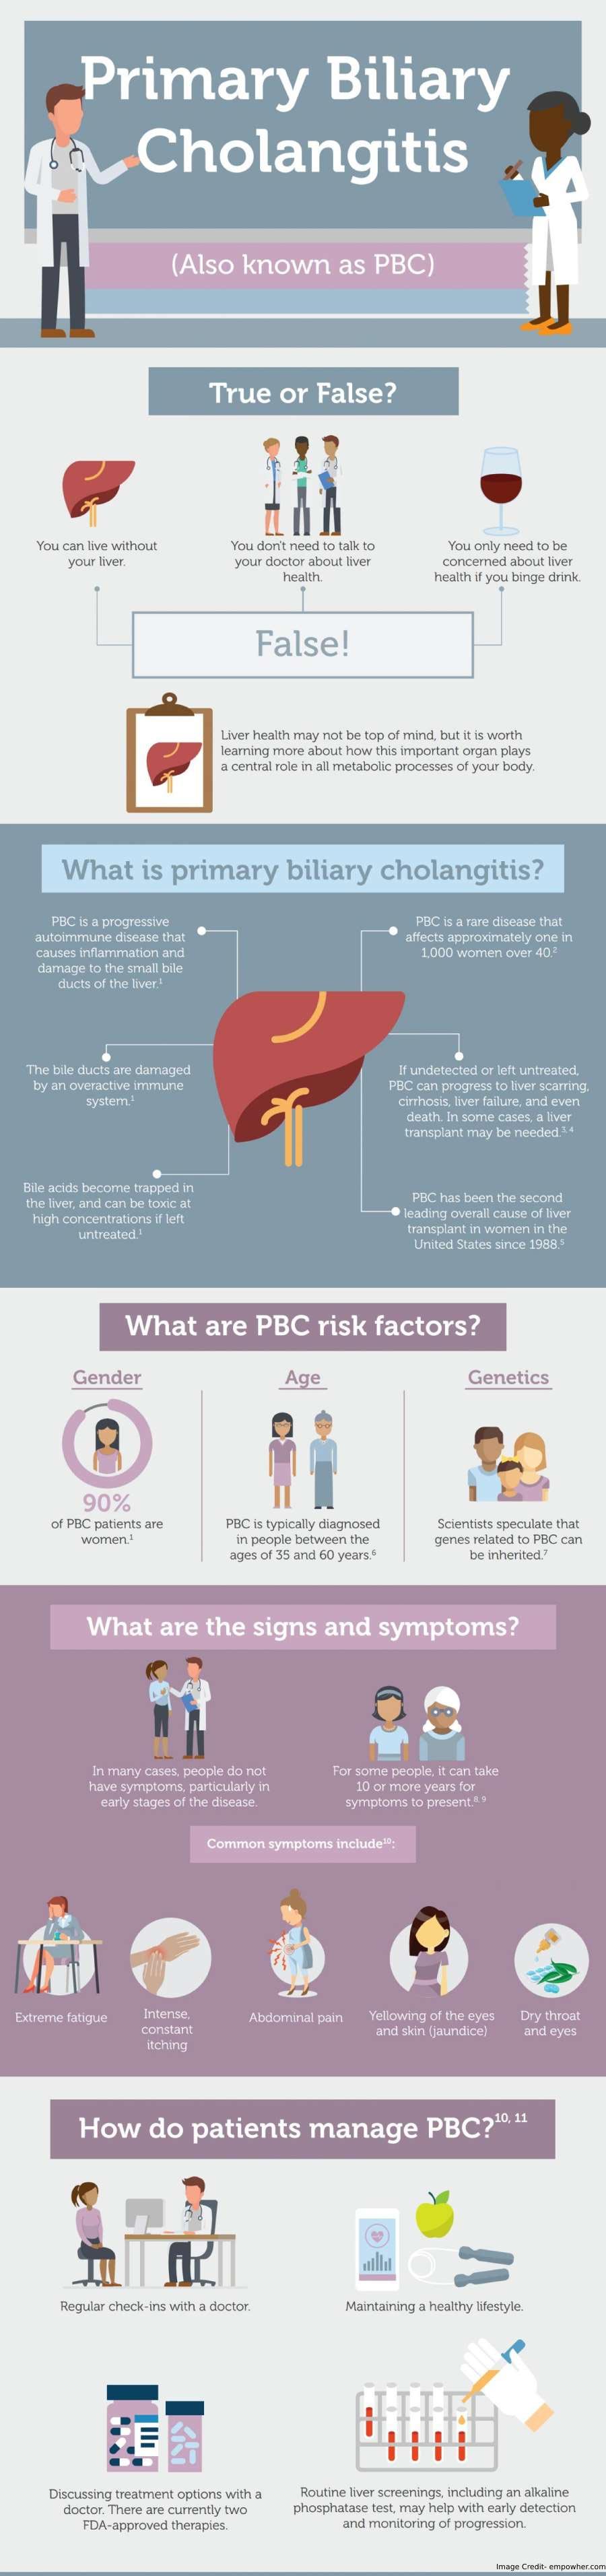 pbc liver disease life expectancy - Captions Nature